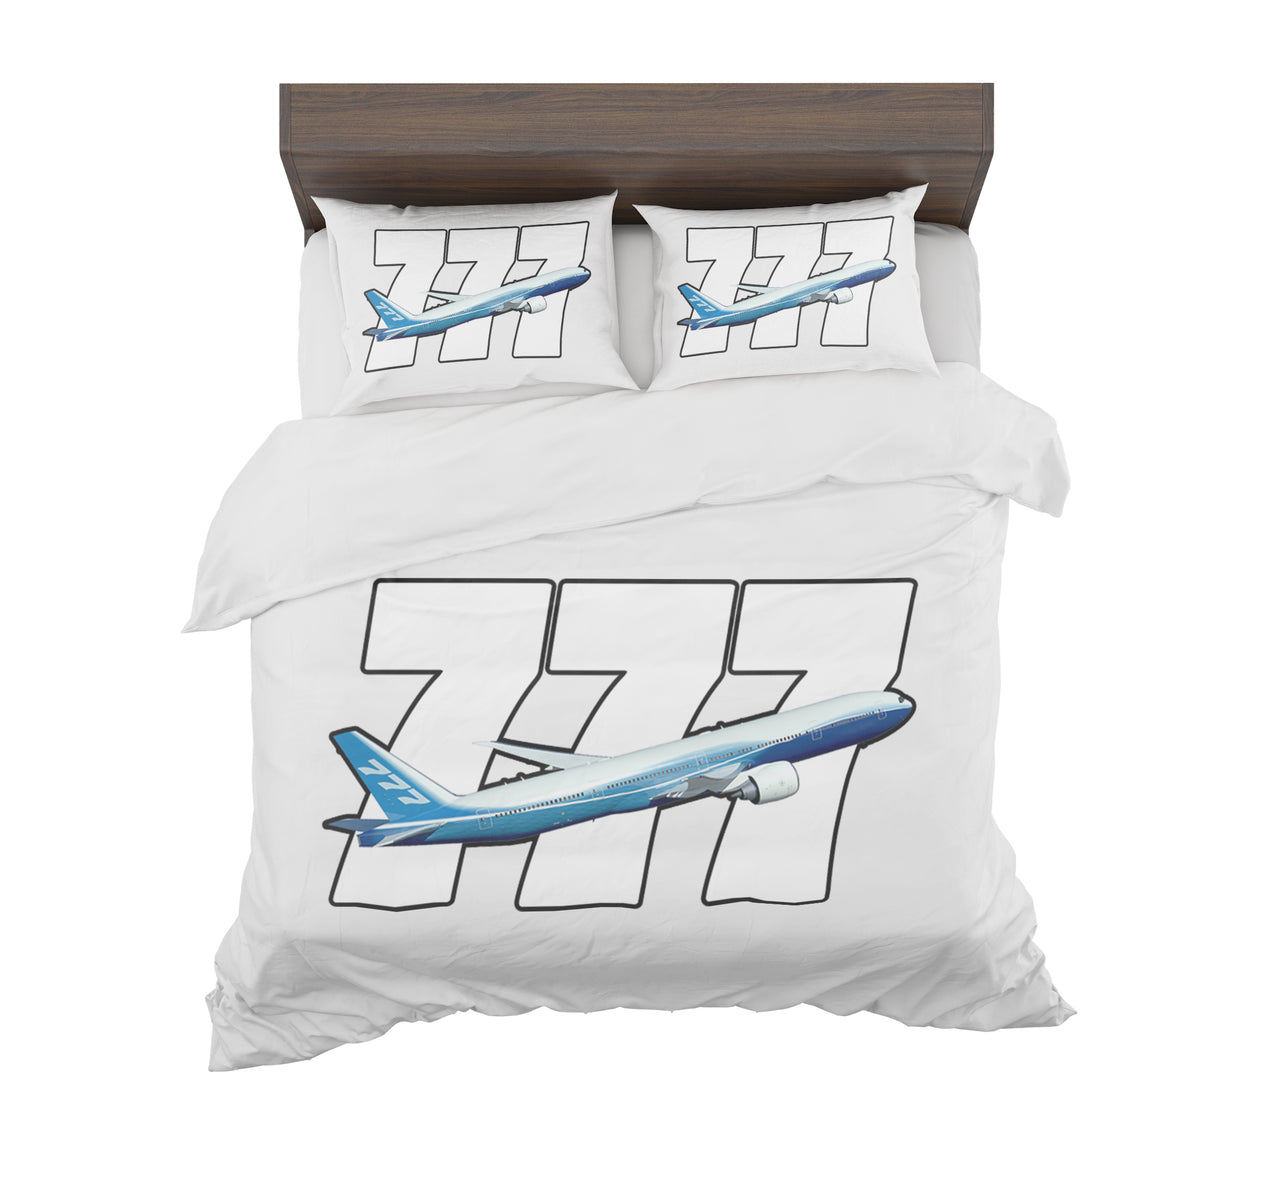 Super Boeing 777 Designed Bedding Sets